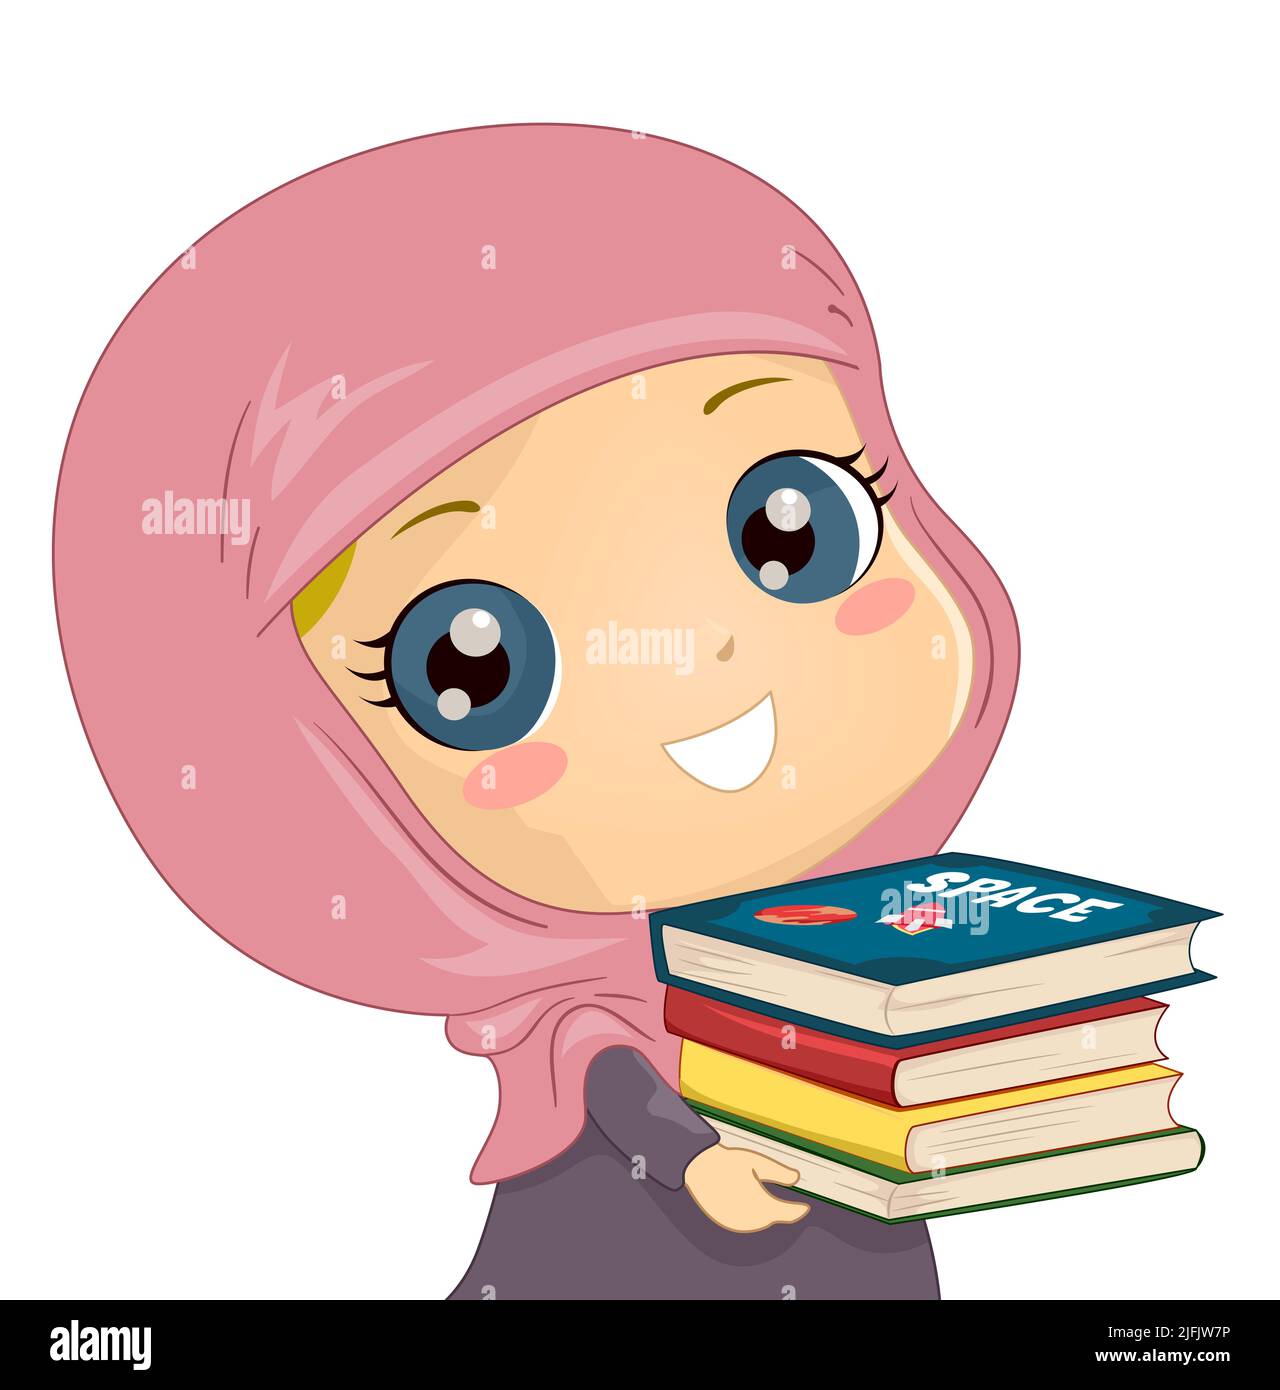 Ilustración de una estudiante musulmana de niña que llevaba hijab y pila de libros Foto de stock